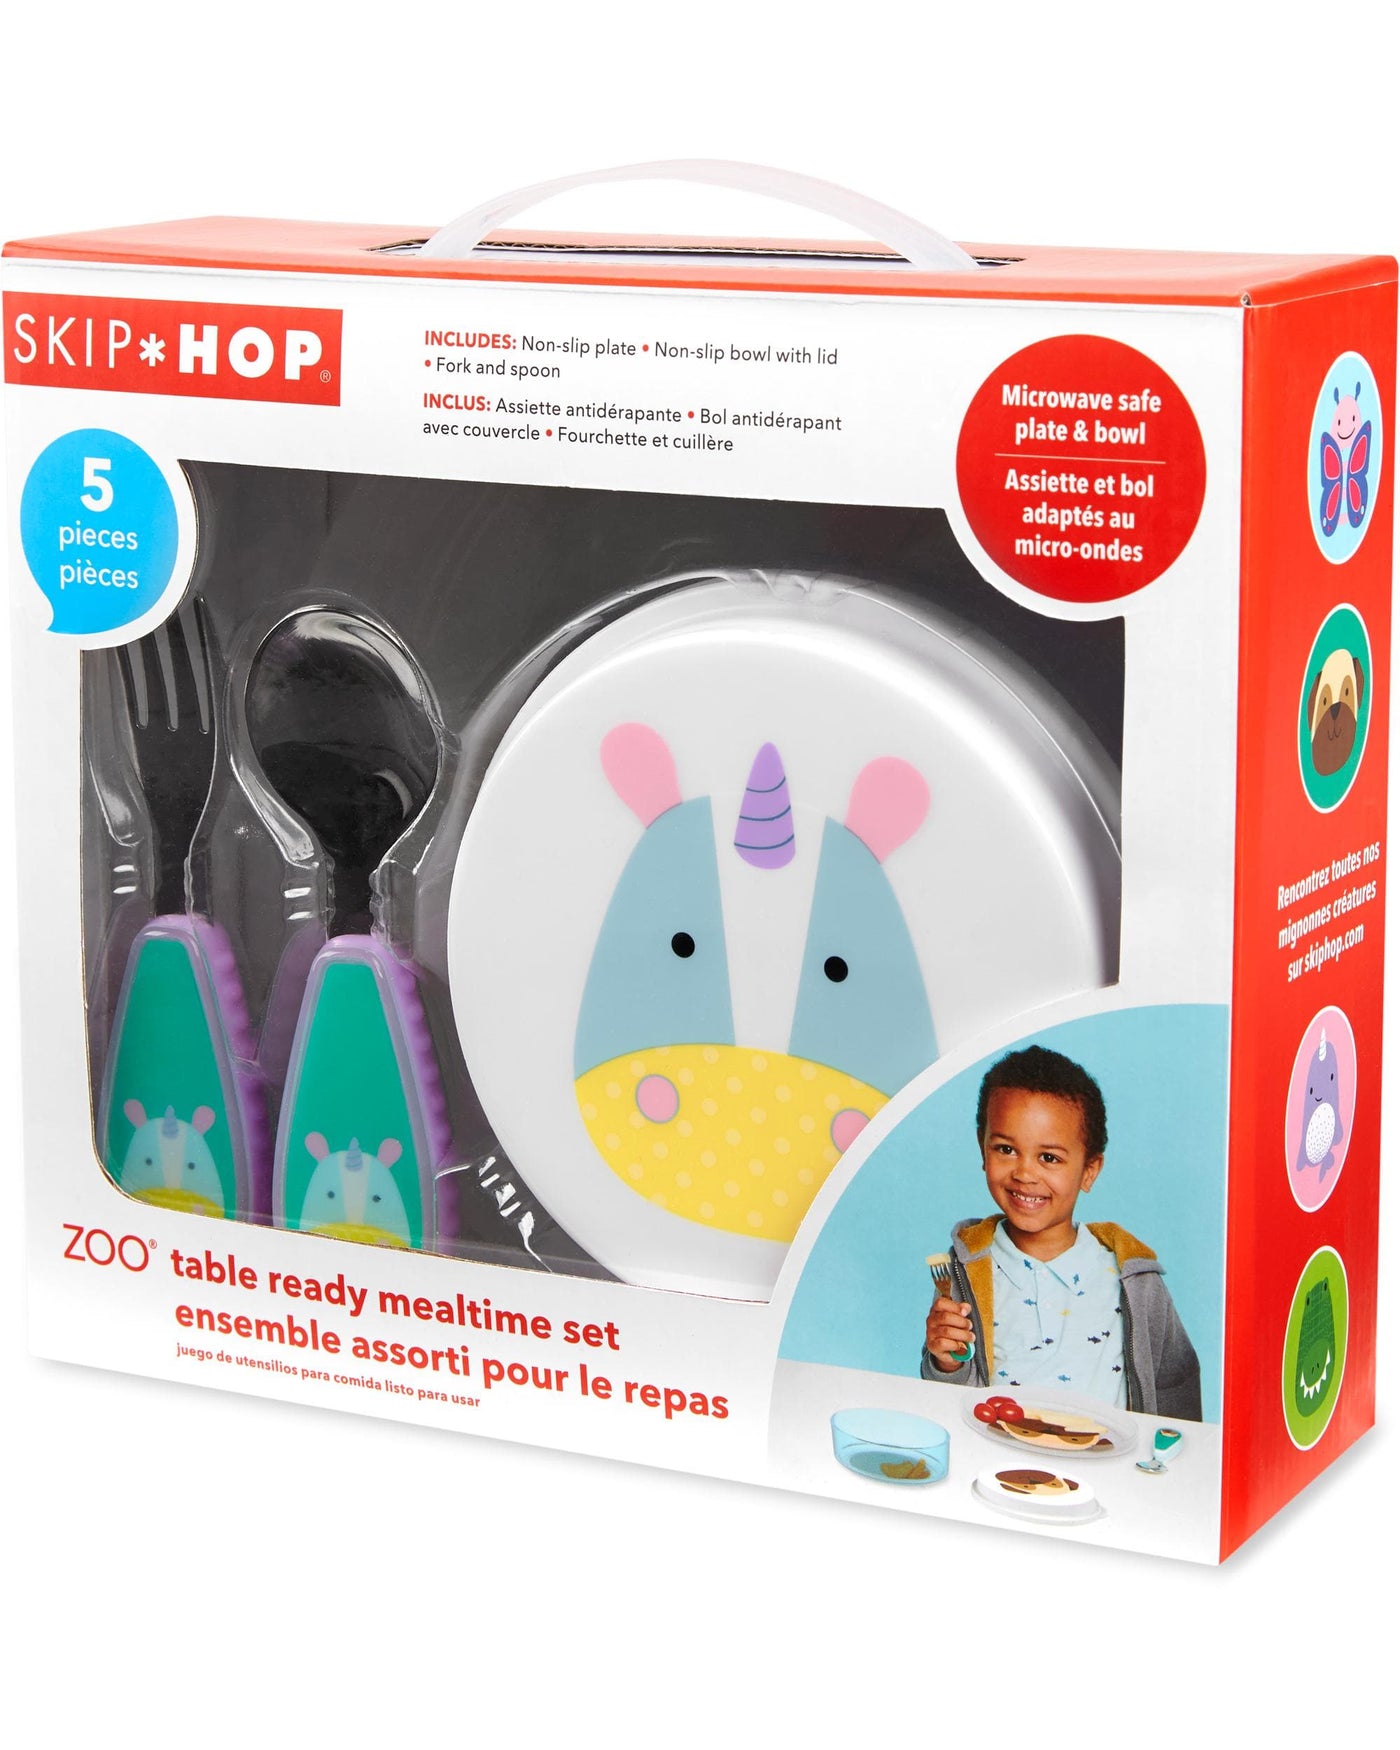 ZOO Table Ready Mealtime Set - Unicorn | Skip Hop by Skip Hop, USA Baby Care